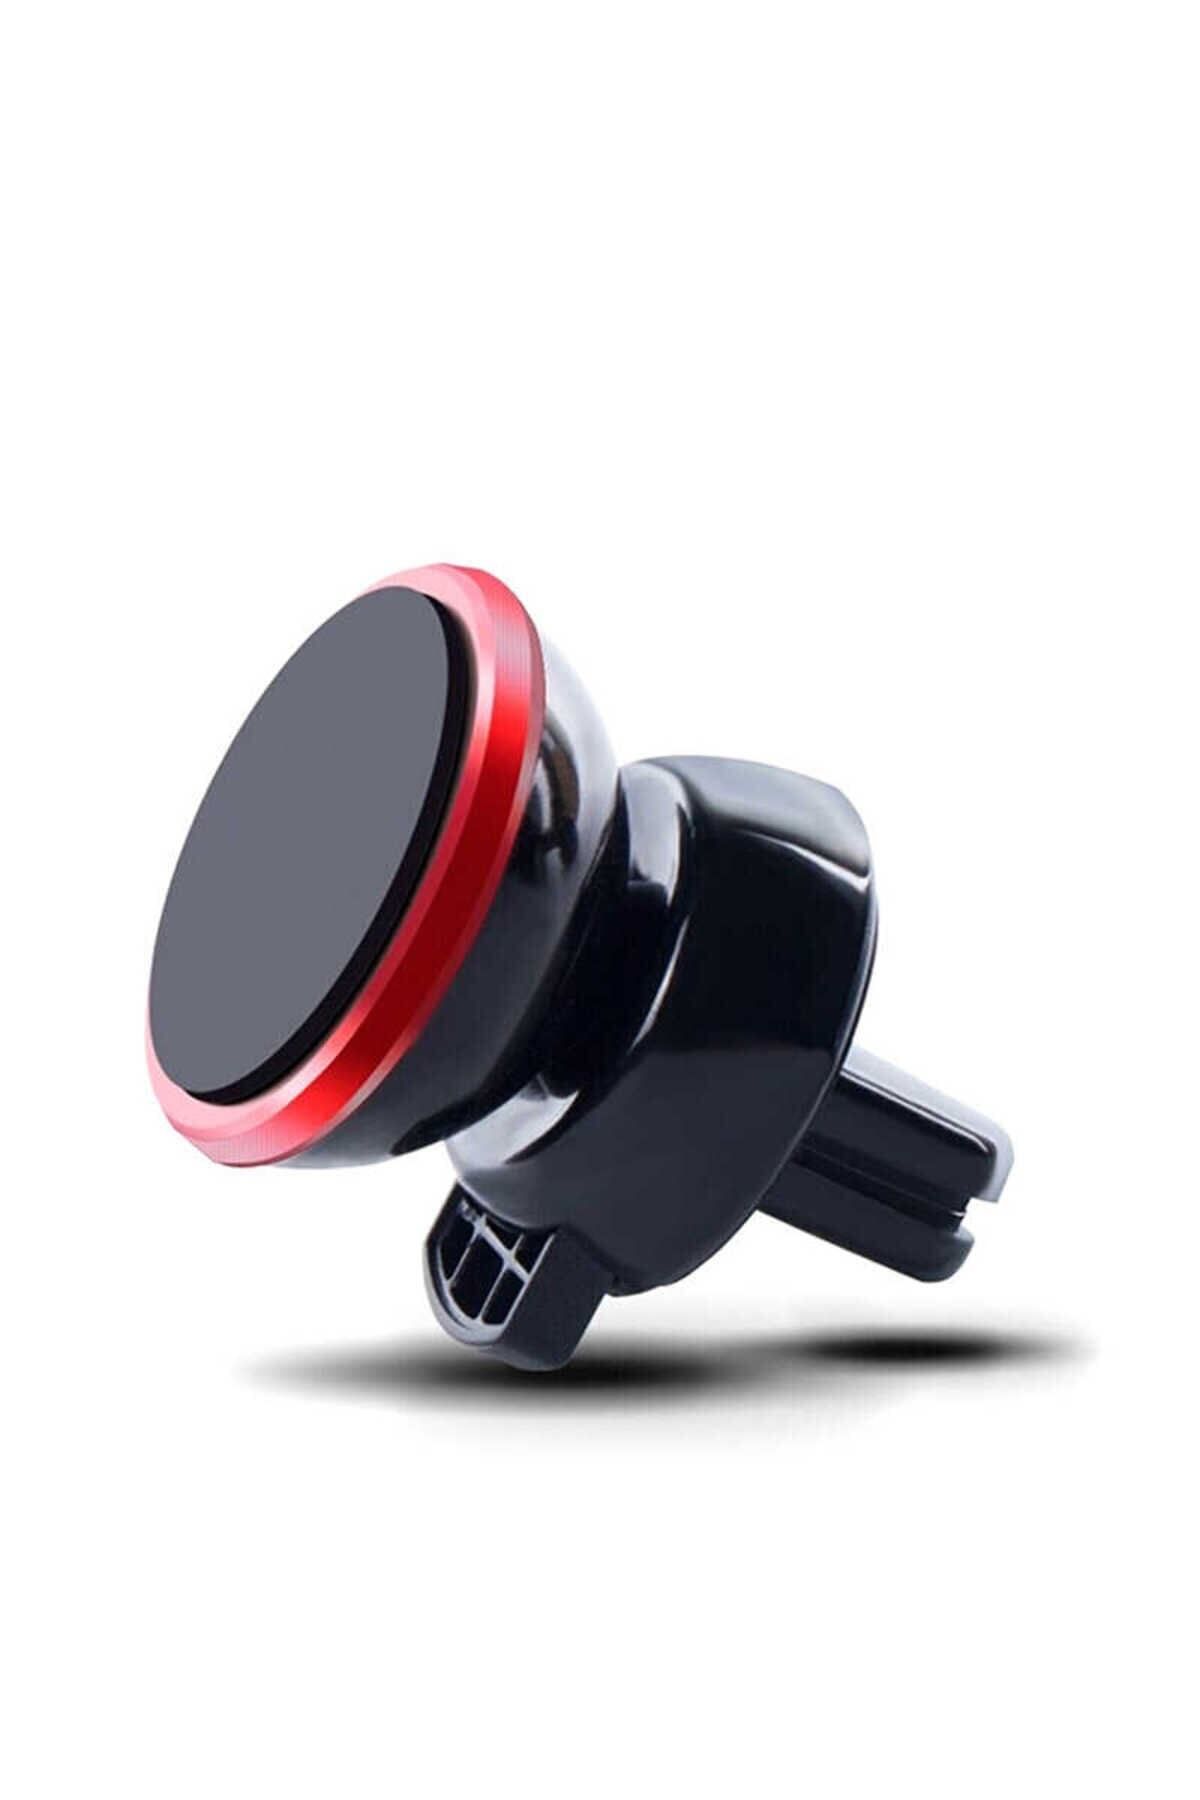 Dolia Araç İçi Telefon Tutucu Güçlü Sarsmaz Manyetik Tutucu Havalandırma Mandallı Standlı Tutacak Kırmızı